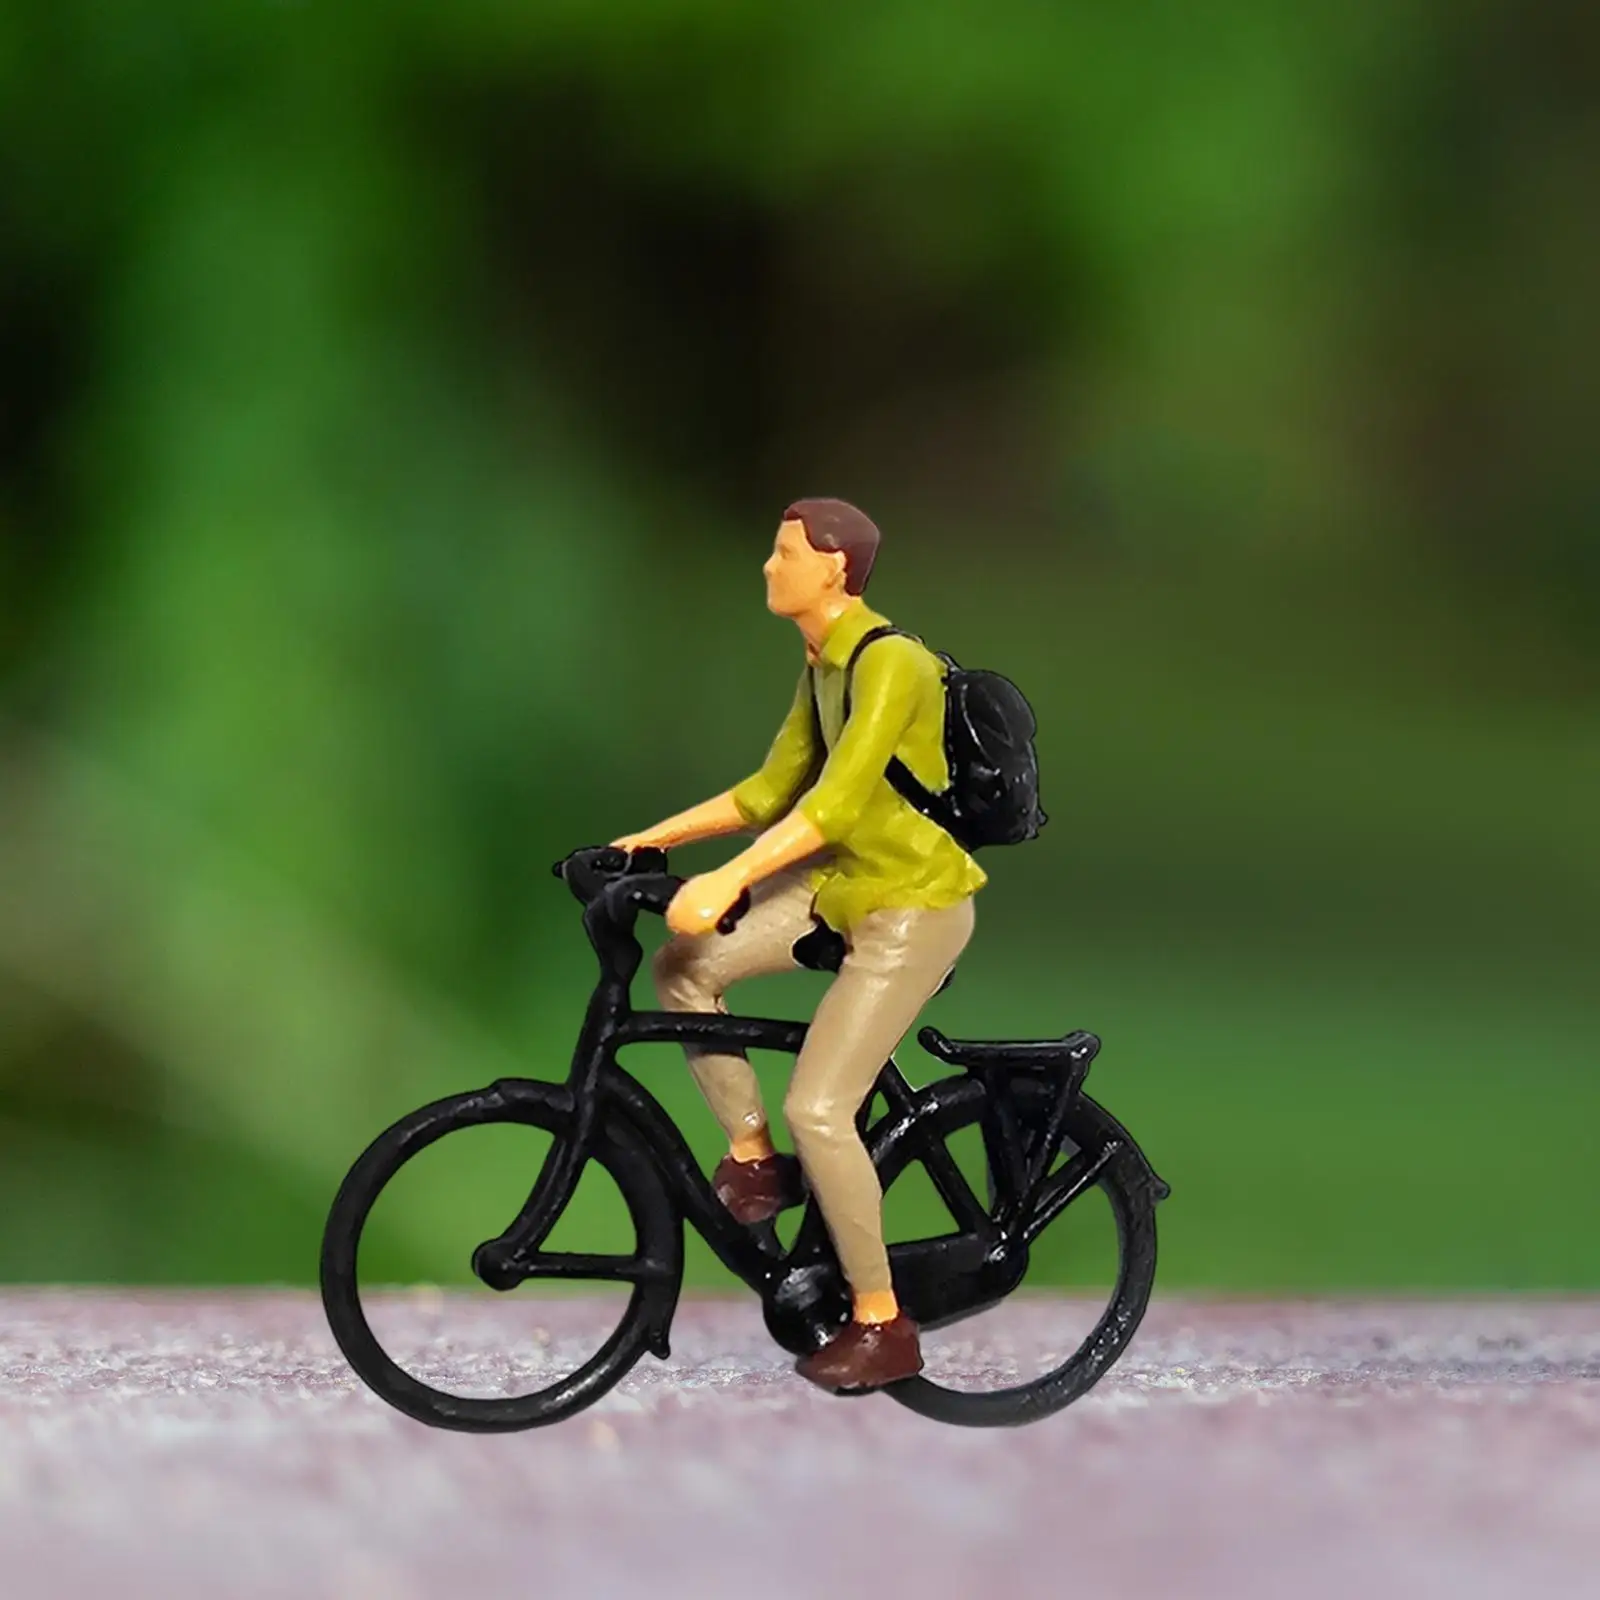 1/87 Rozsahu Cyklista Údaje Drobné Ľudí na Cyklistickú Scénu Diorama Layout